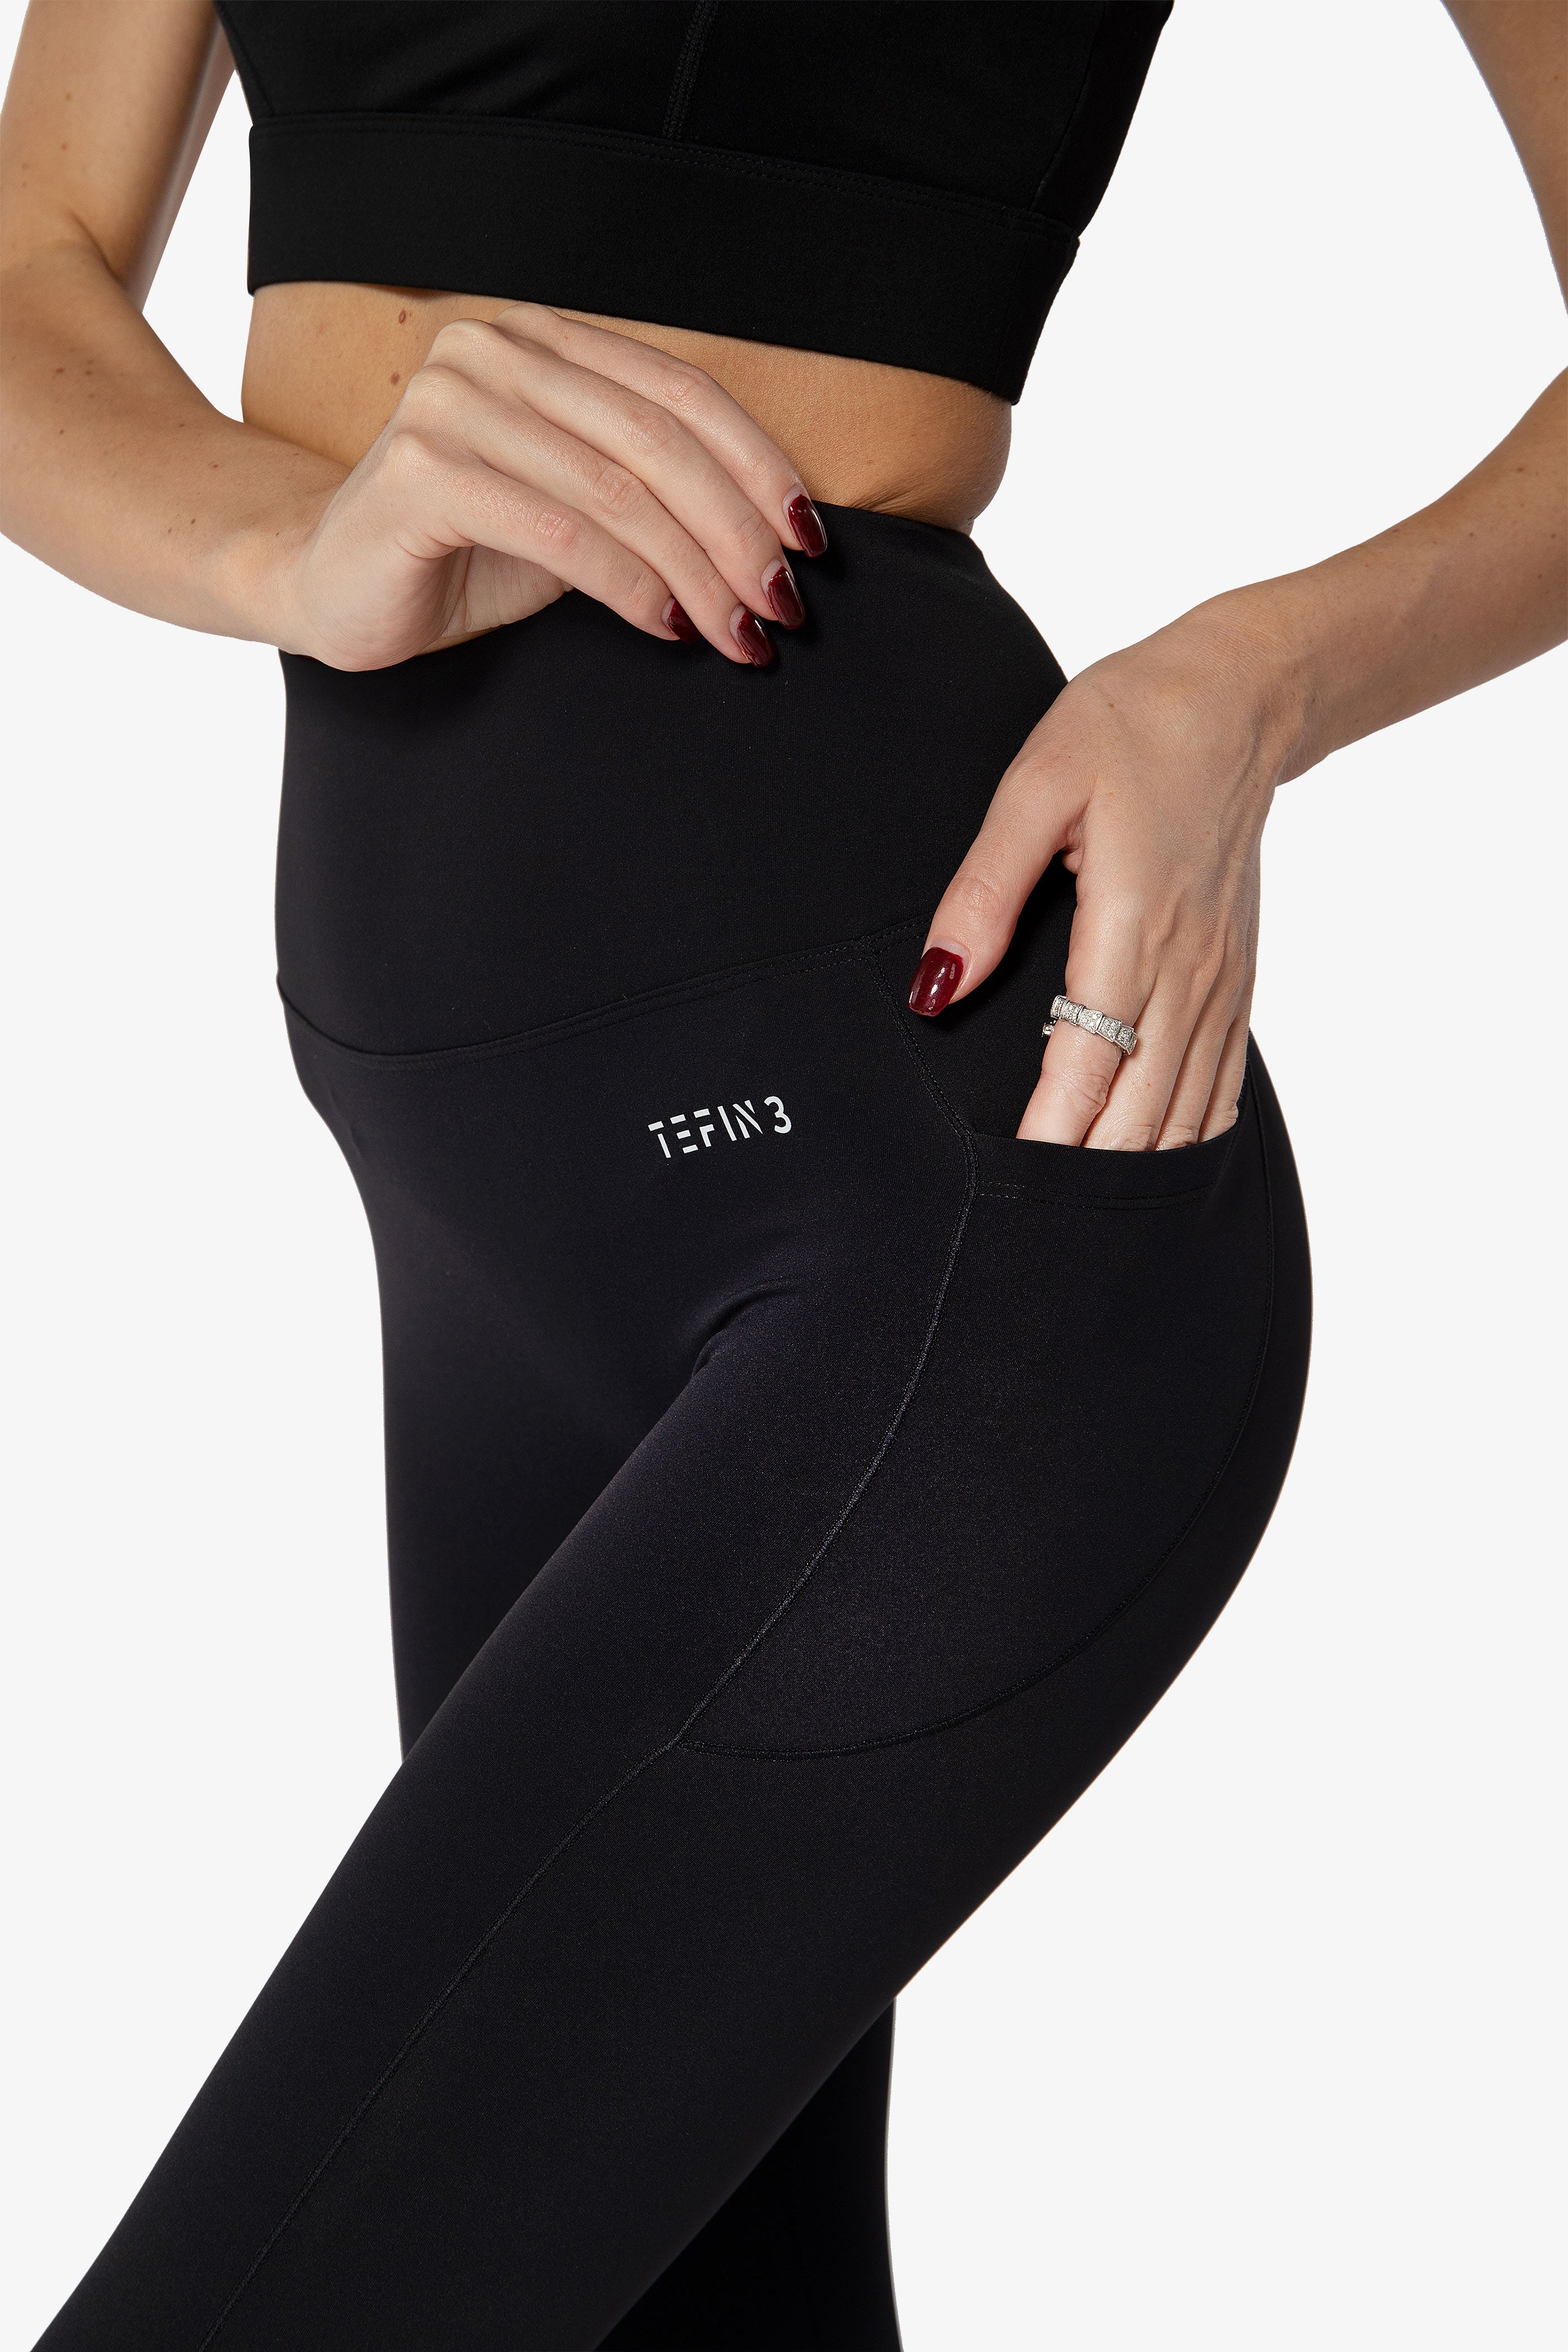 Fengbay Activewear Leggings Womens Large L Black Spandex Blend Slim Fit  Pants